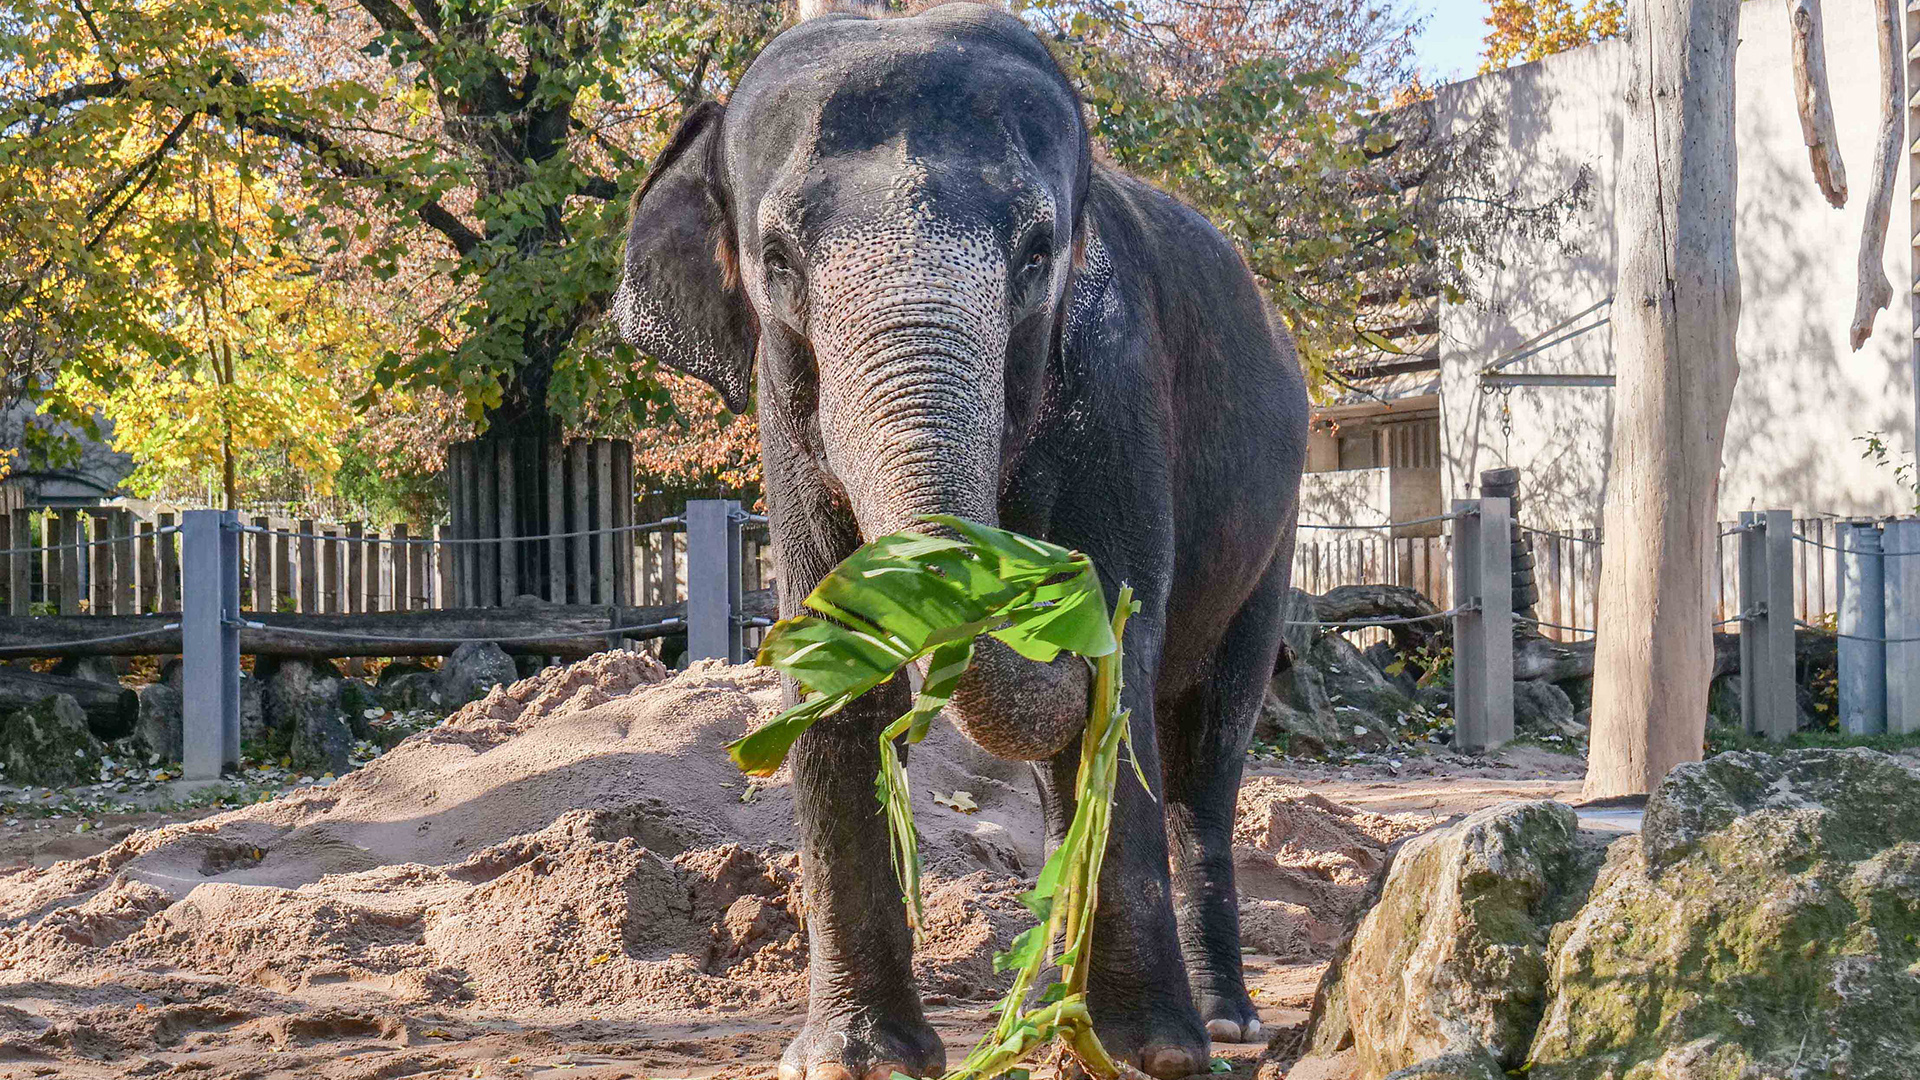 Elefanten in einem Zoo-Gehege | H.Knitter